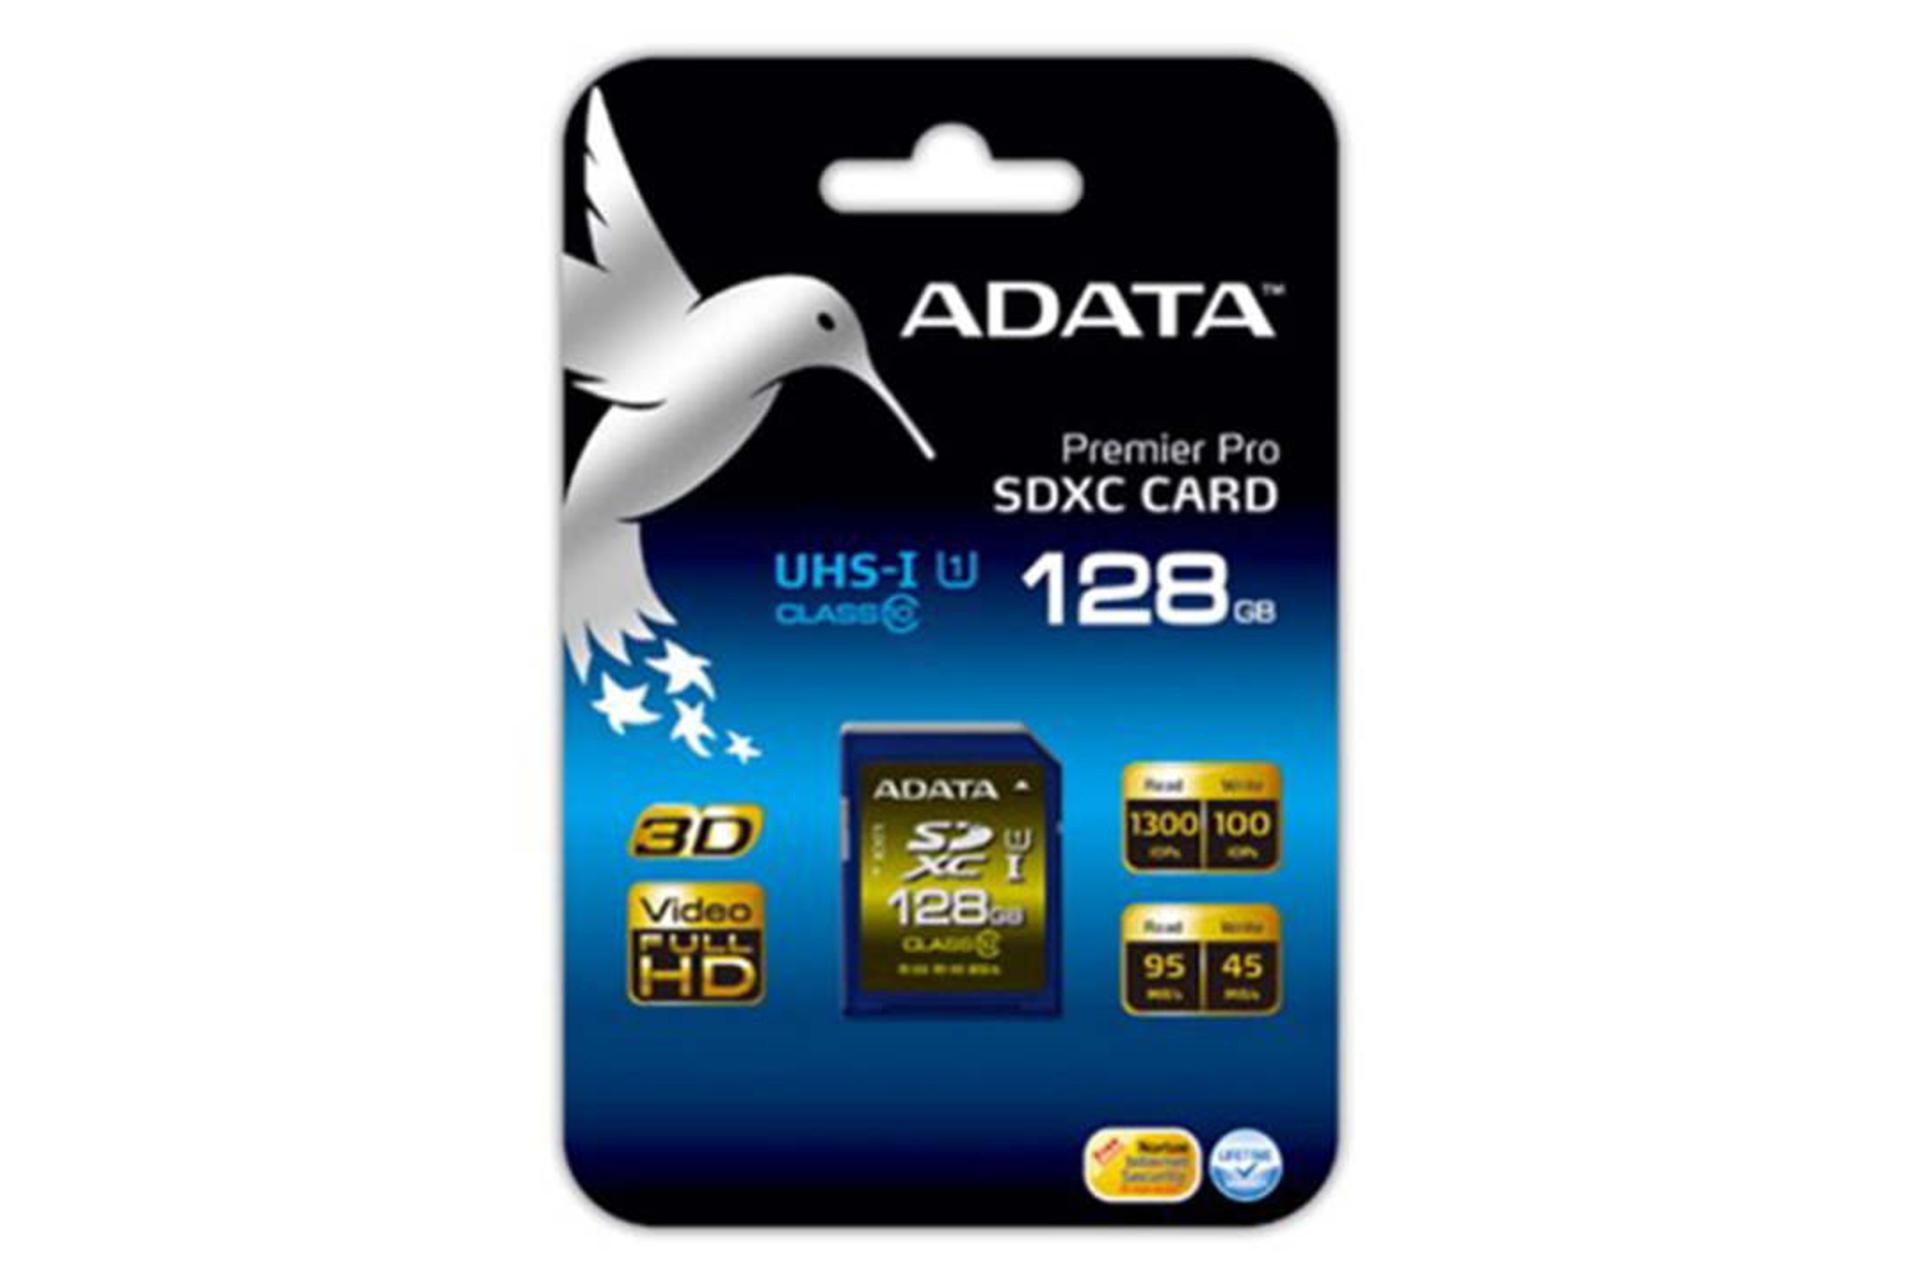 ADATA Premier Pro SDXC Class 10 UHS-I U1 128GB